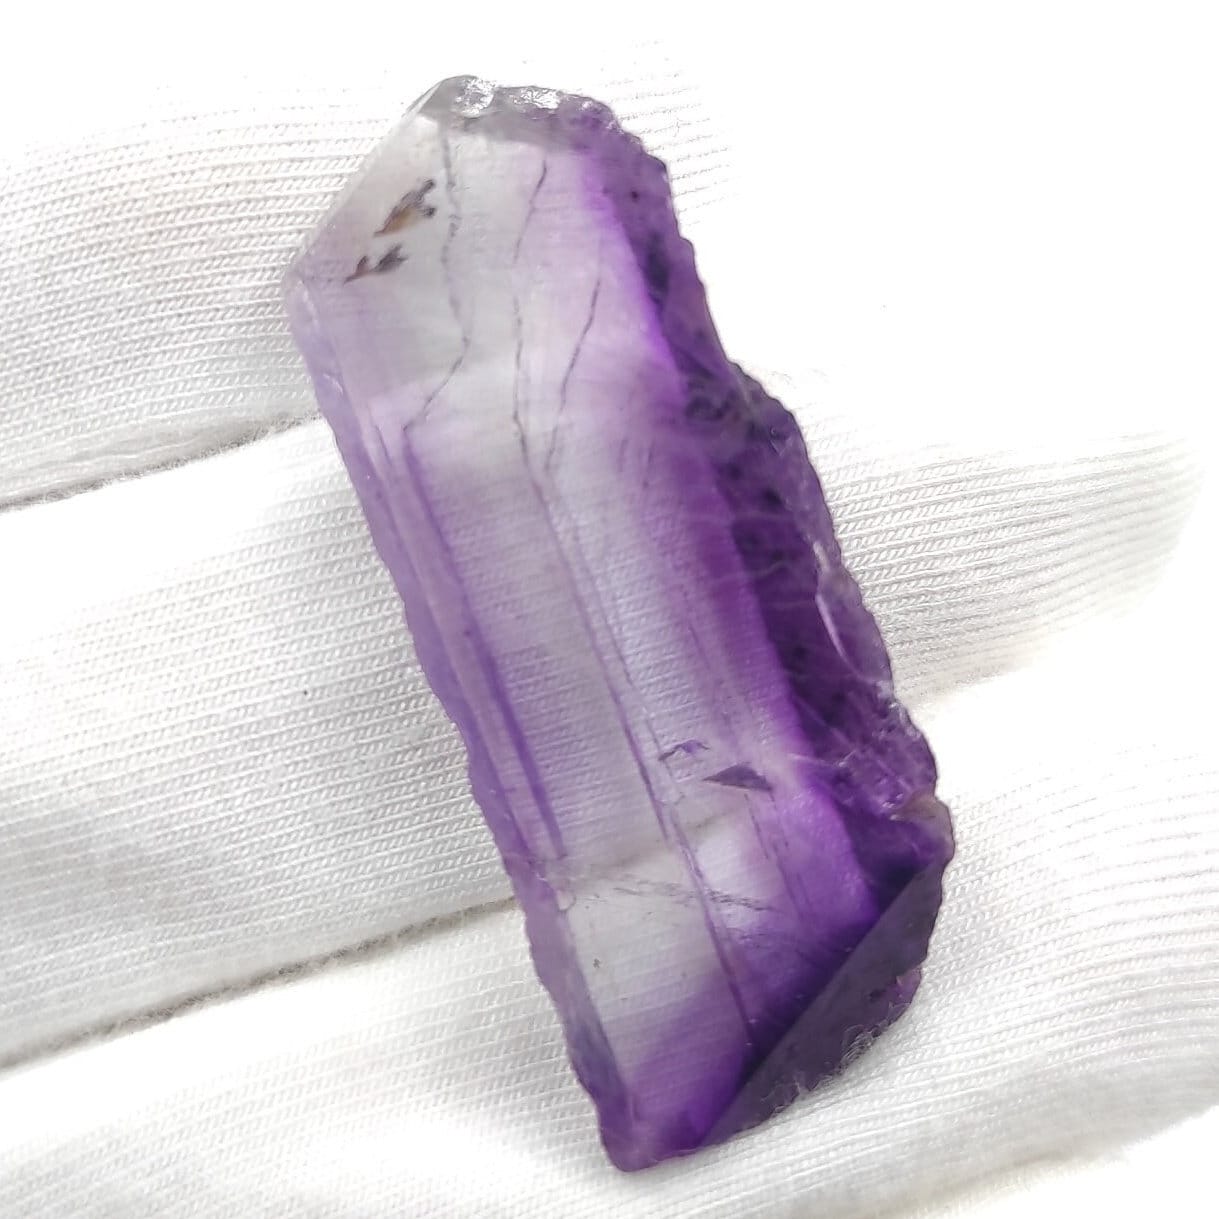 6.13g Illinois Fluorite Specimen - Purple Fluorite from Cave-in-Rock, Hardin County, Illinois - Natural Purple Fluorite Mineral Specimen